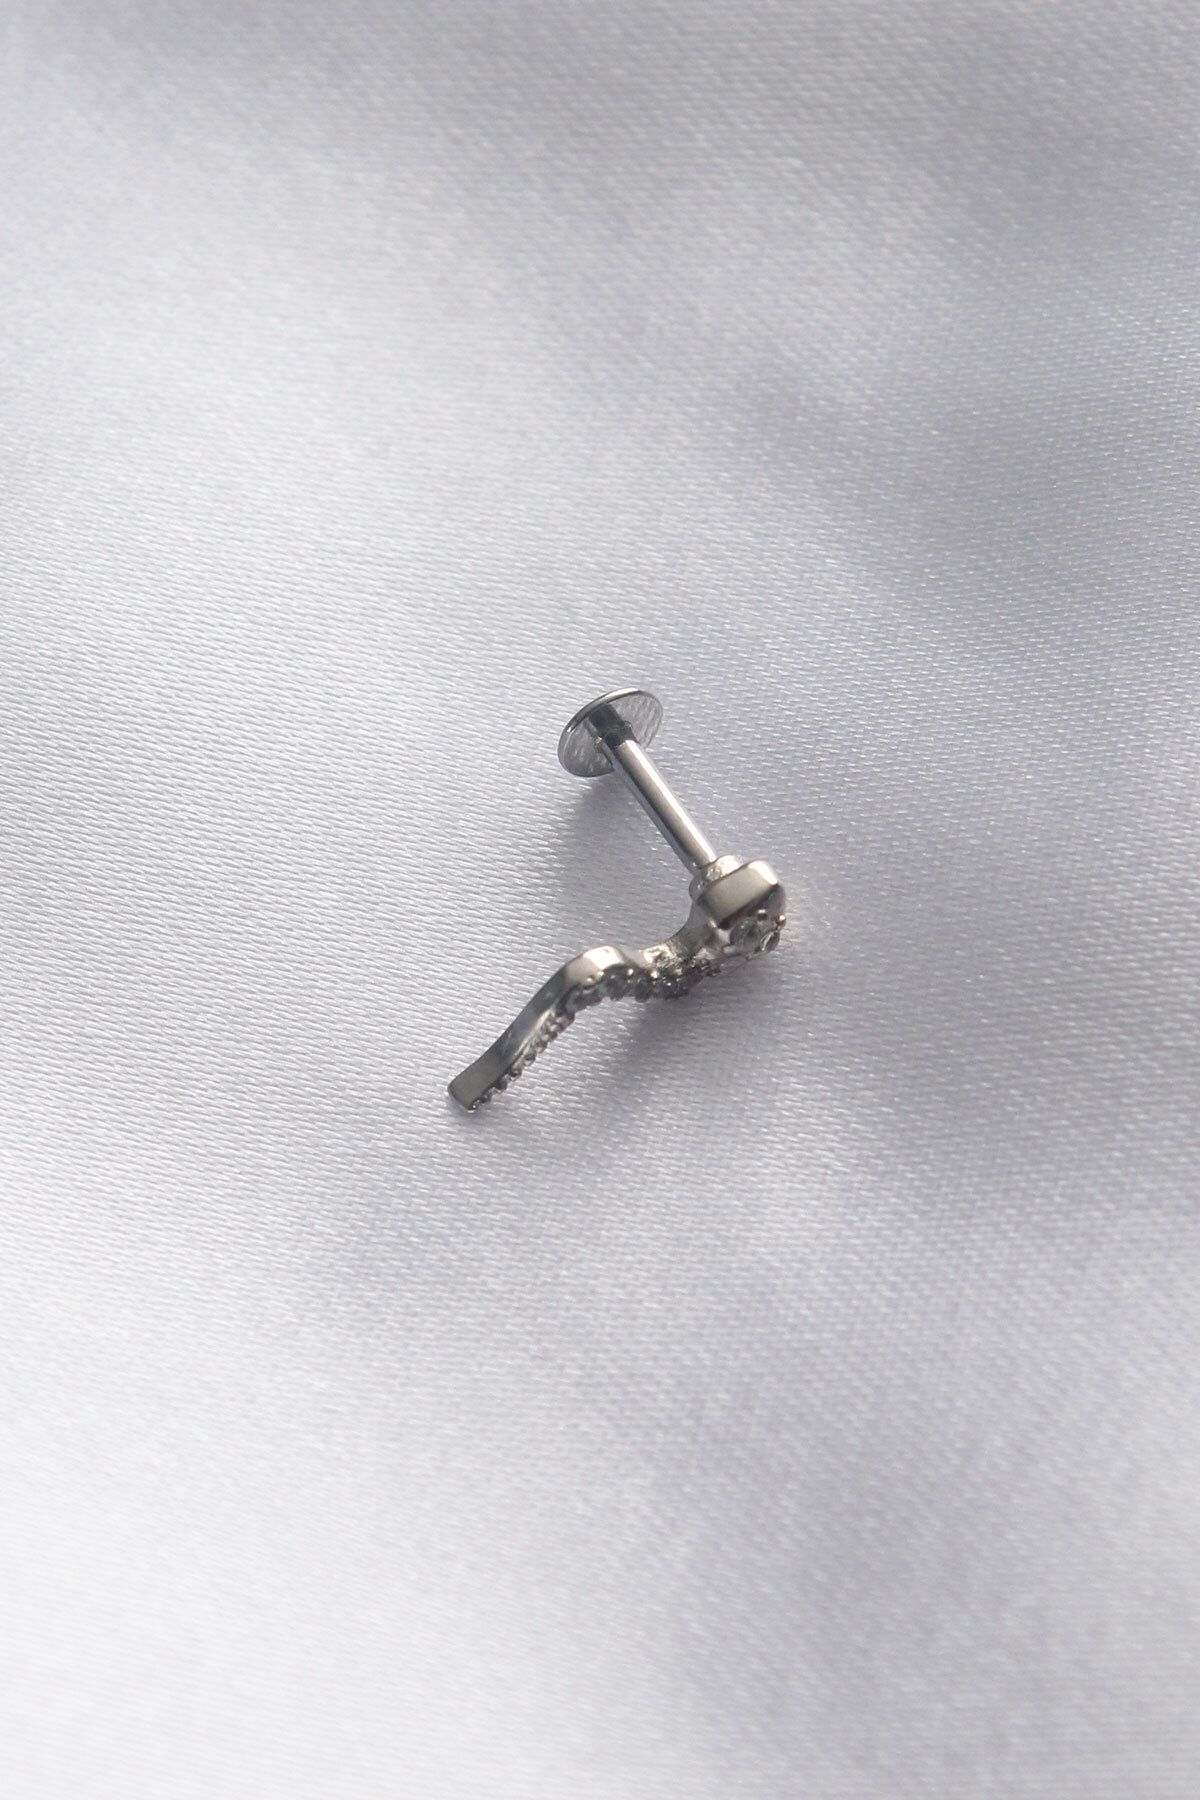 Genel Markalar 316L Cerrahi Çelik 6 mm Gümüş Renk Yılan Tragus Piercing